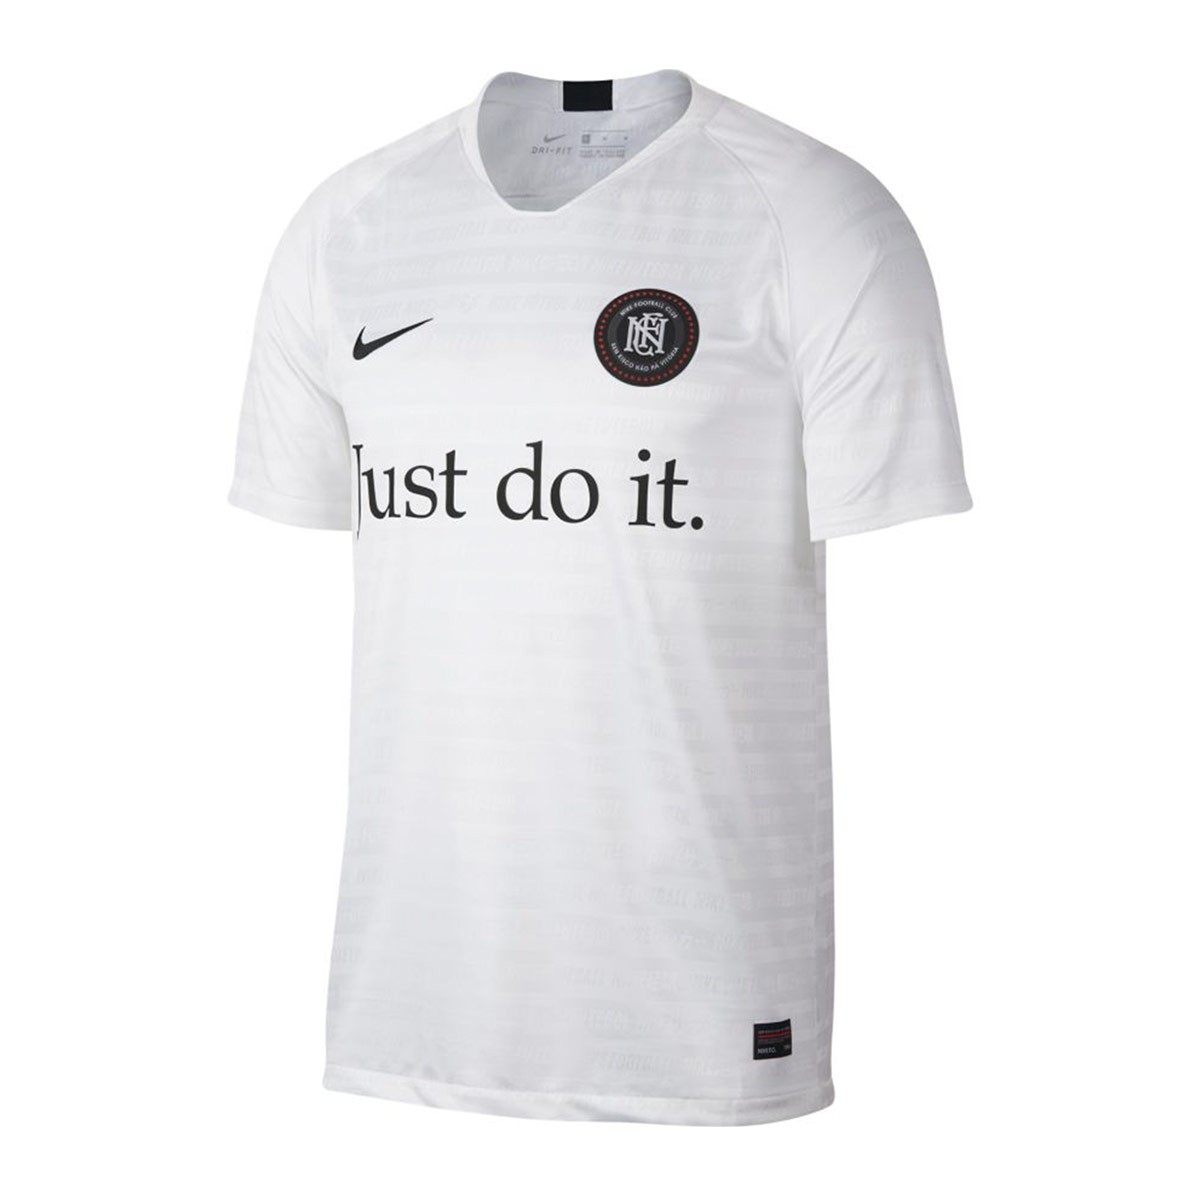 Jersey Nike Nike F.C. Away White-Black 